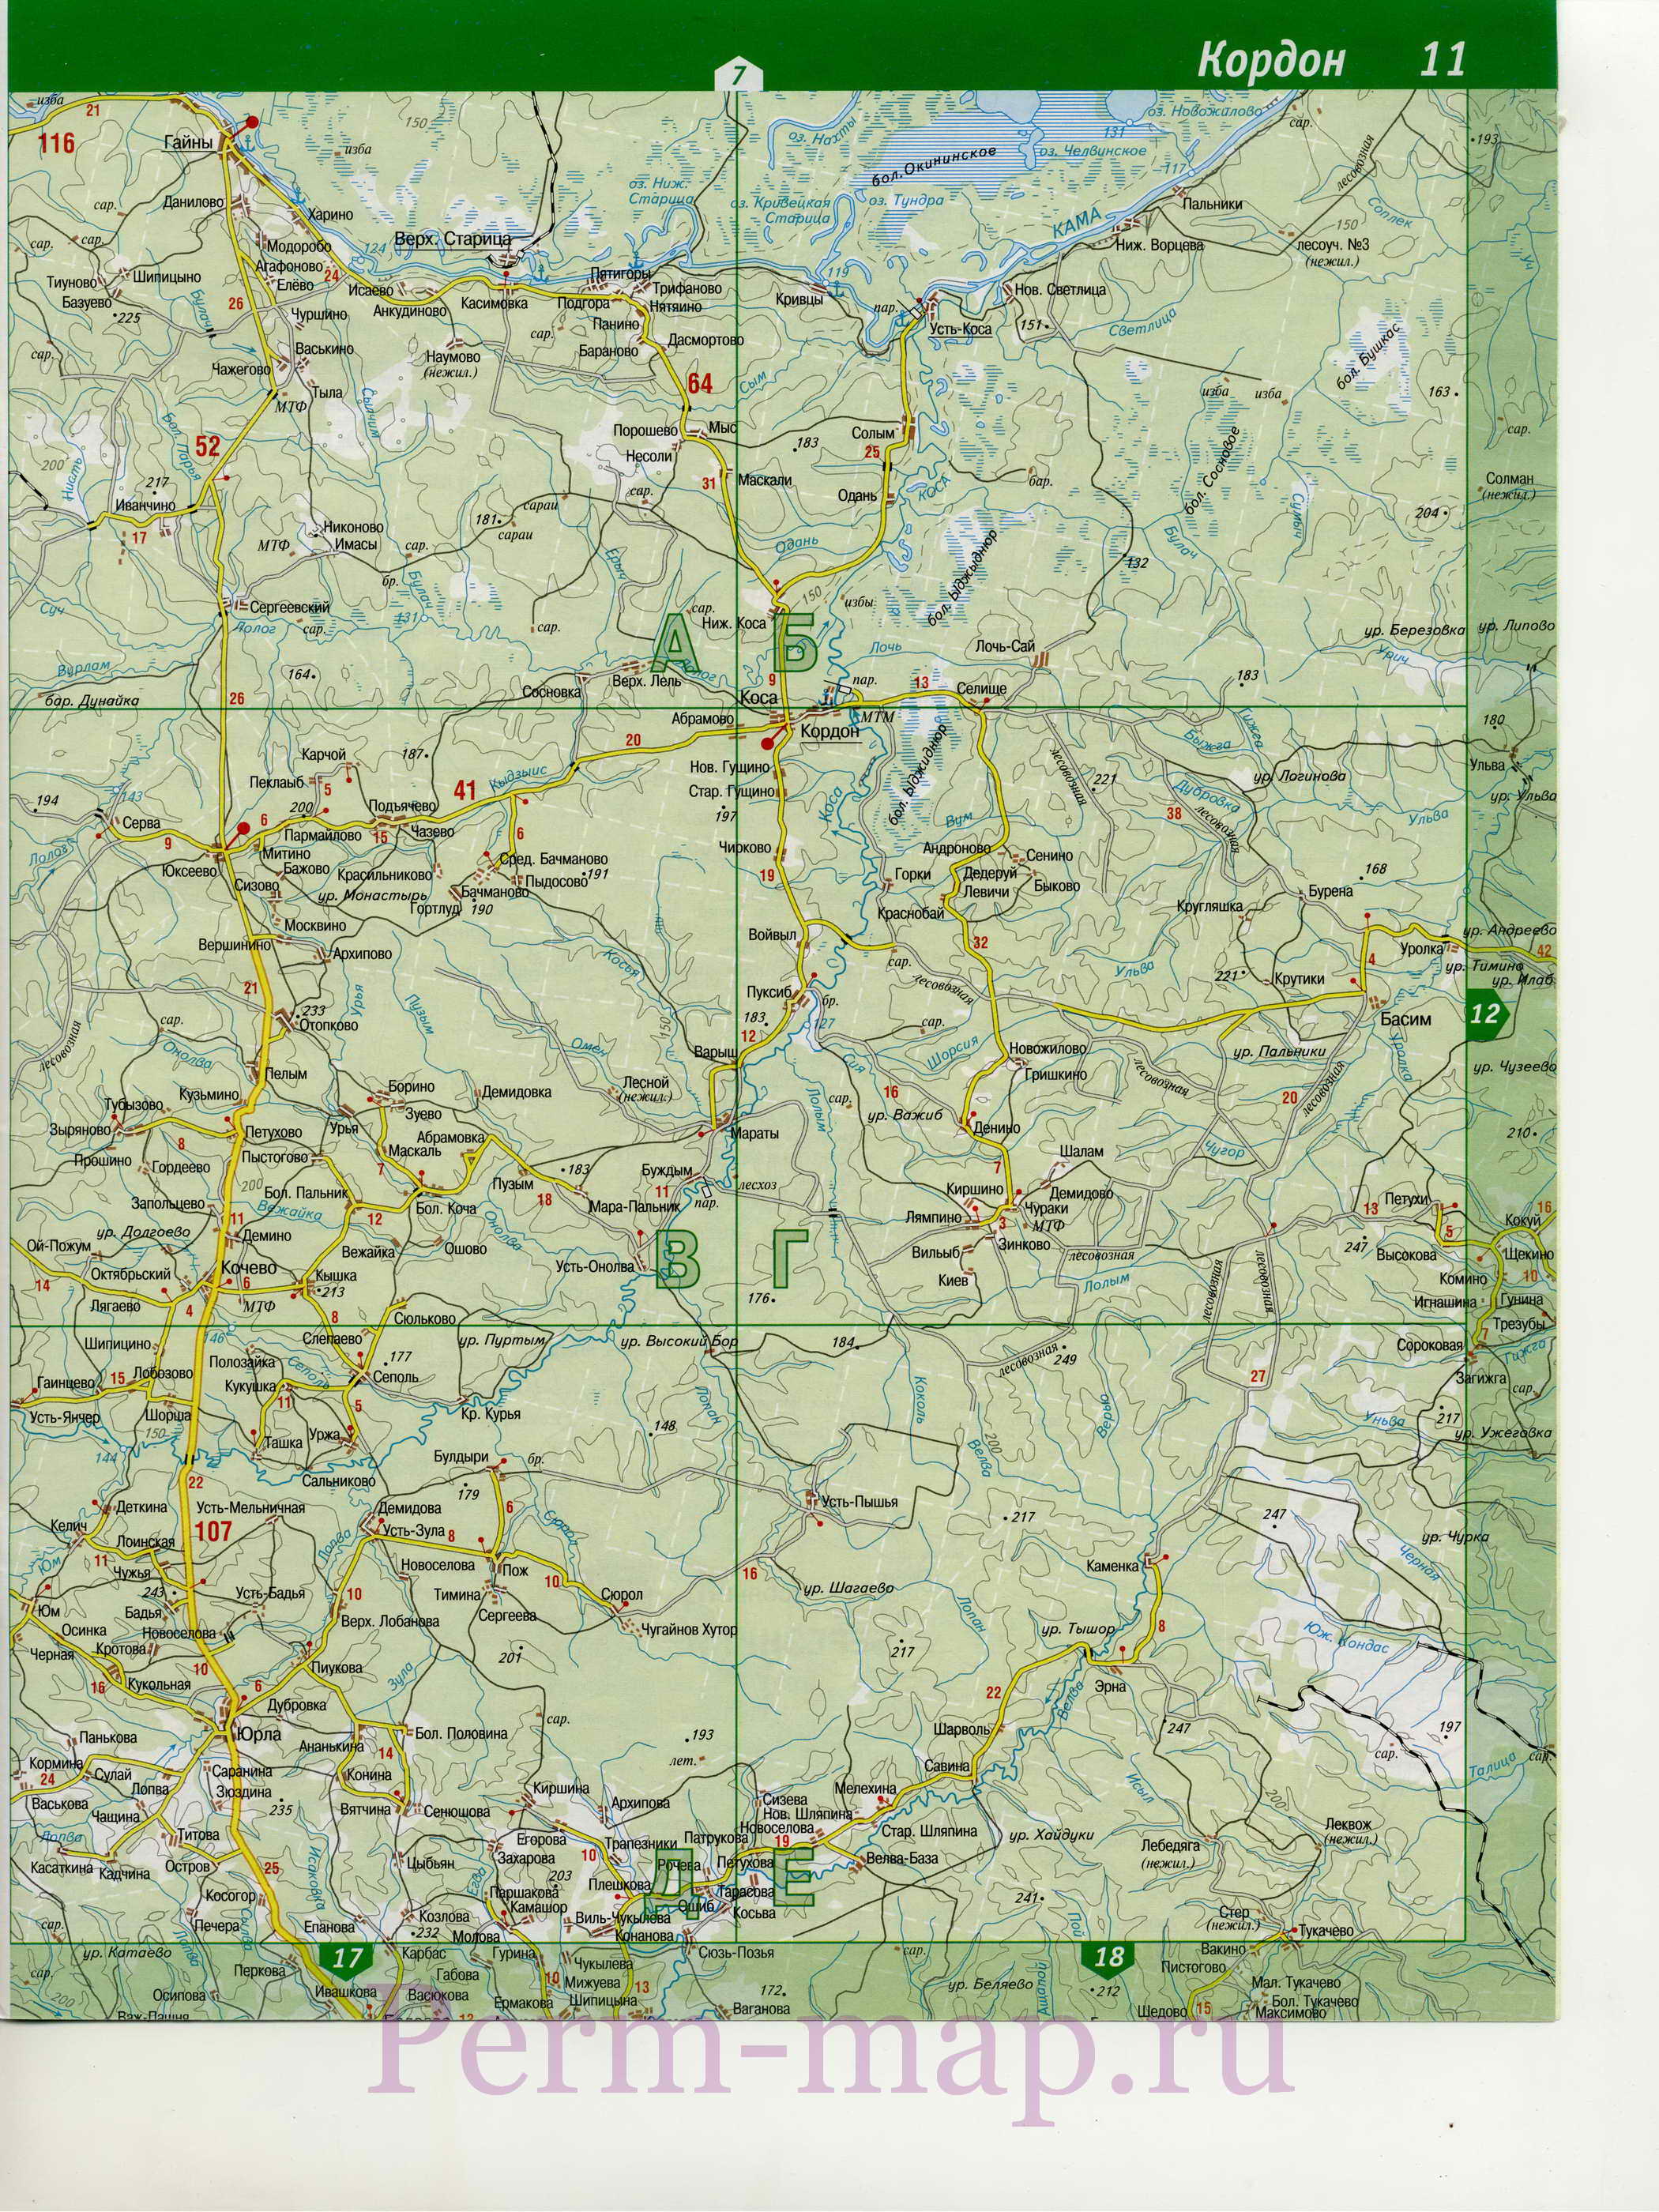 Гайнский район Коми-Пермяцкого автономного округа - топографическая карта. карта Гайнского района, B1 - 